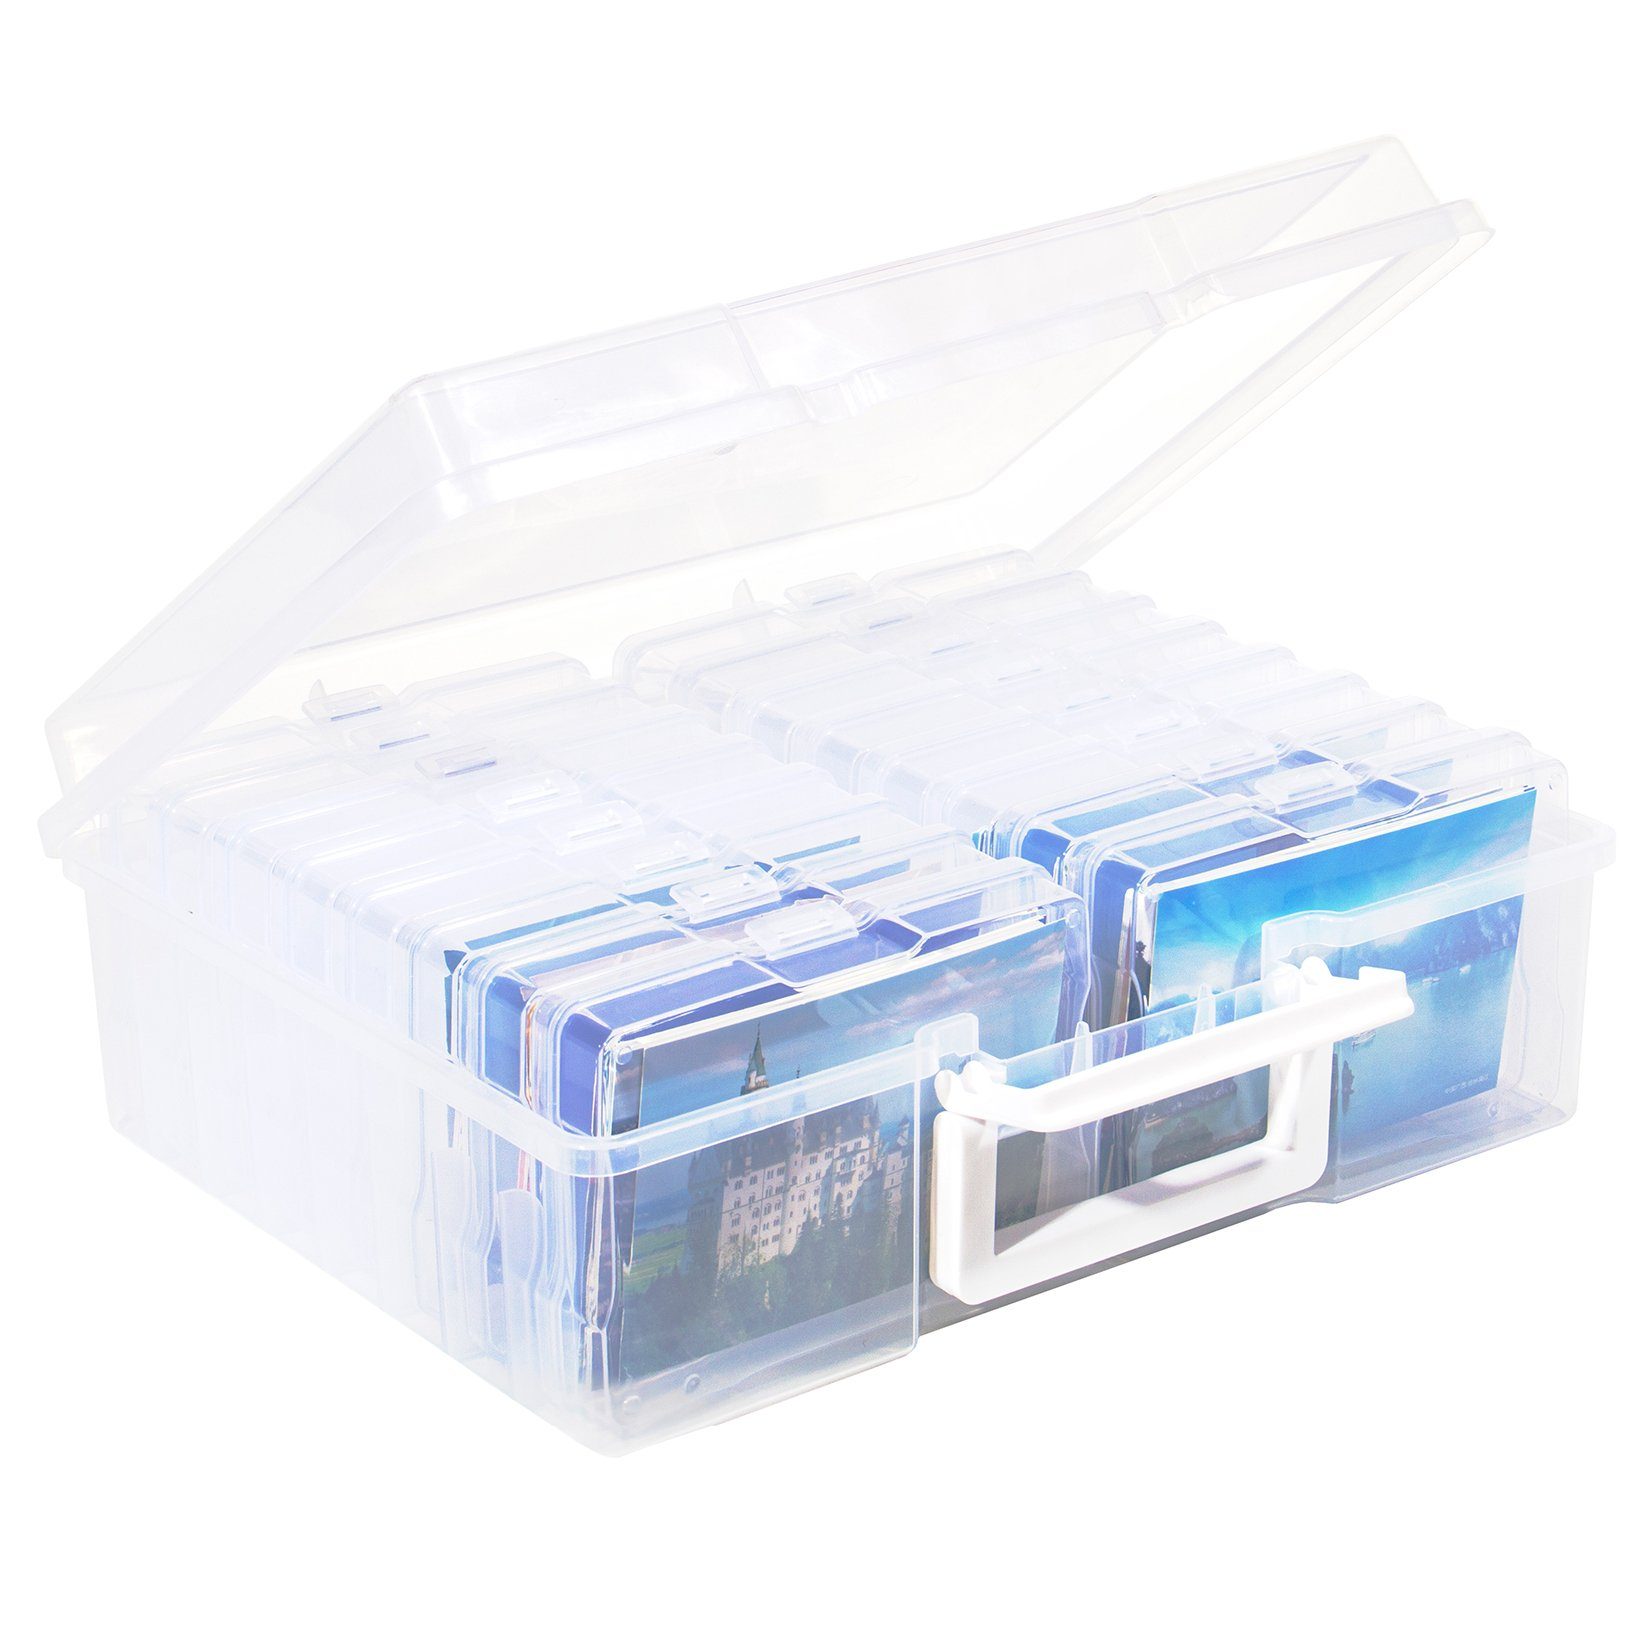 für Kleinteile 16 Fächer Organizer Aufbewahrungsbox - Zedelmaier transparente,Fotobox